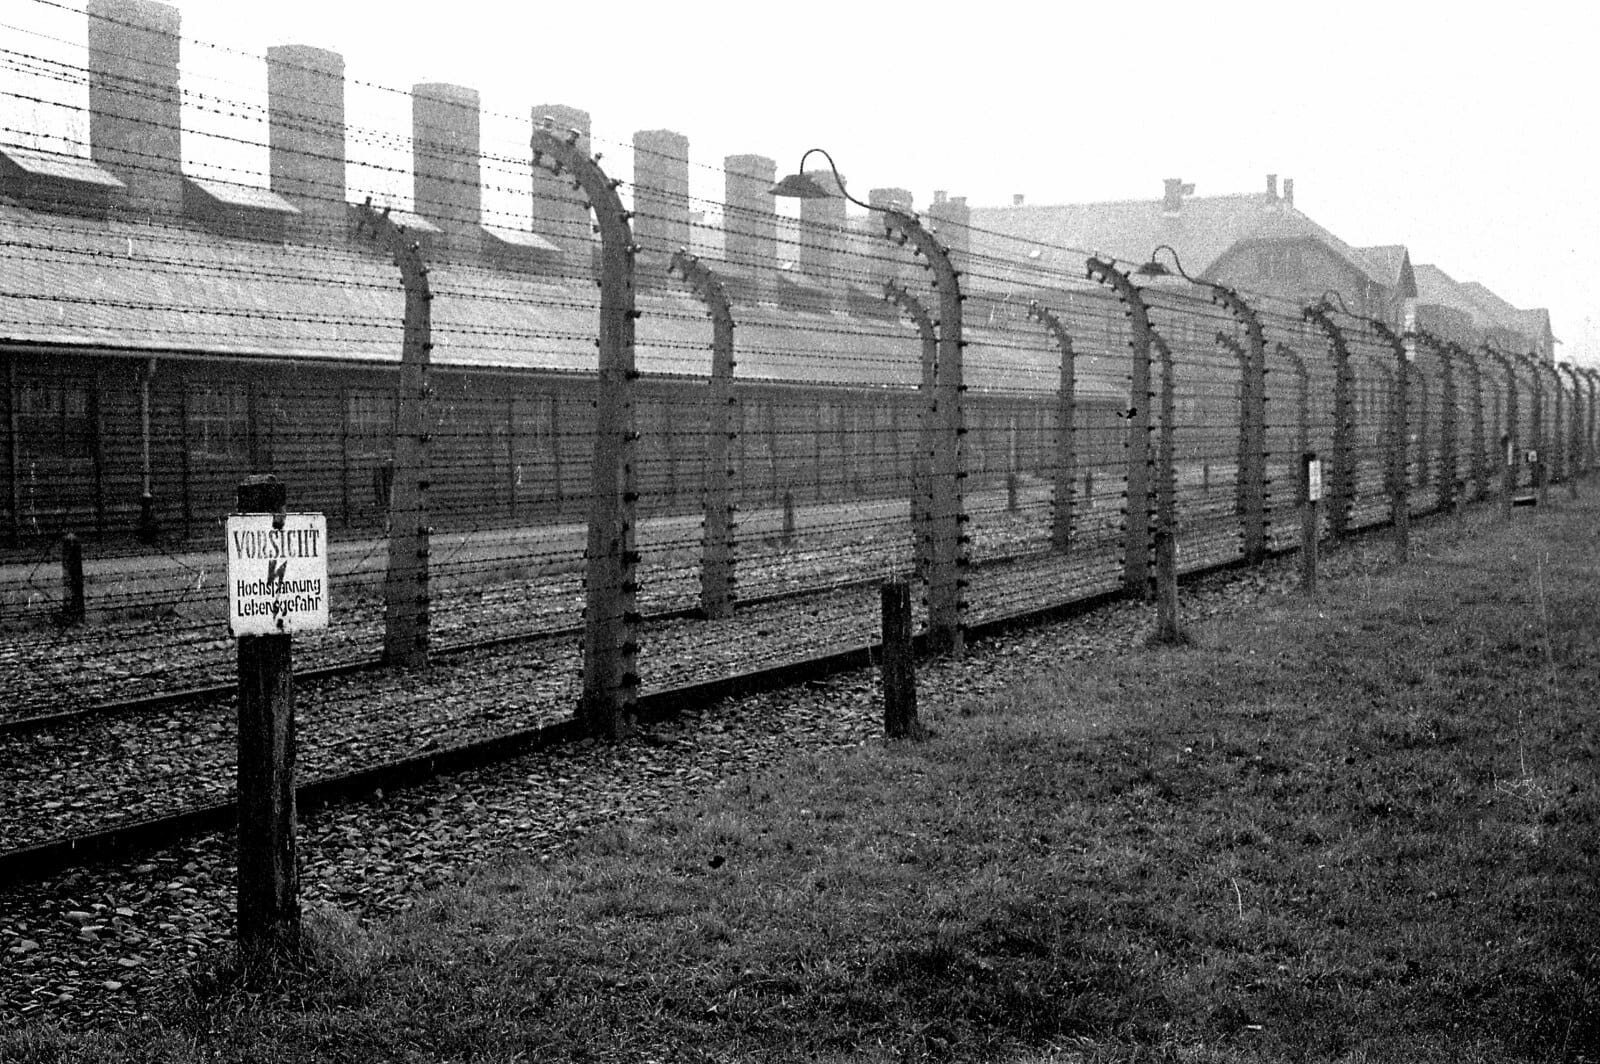 Concentration camp. Концентрационный лагерь Аушвиц. Концентрационный лагерь Освенцим. Лагеря Освенцим Аушвиц-Биркенау. Концентрационный лагерь Освенцим (Auschwitz concentration Camp), Польша.